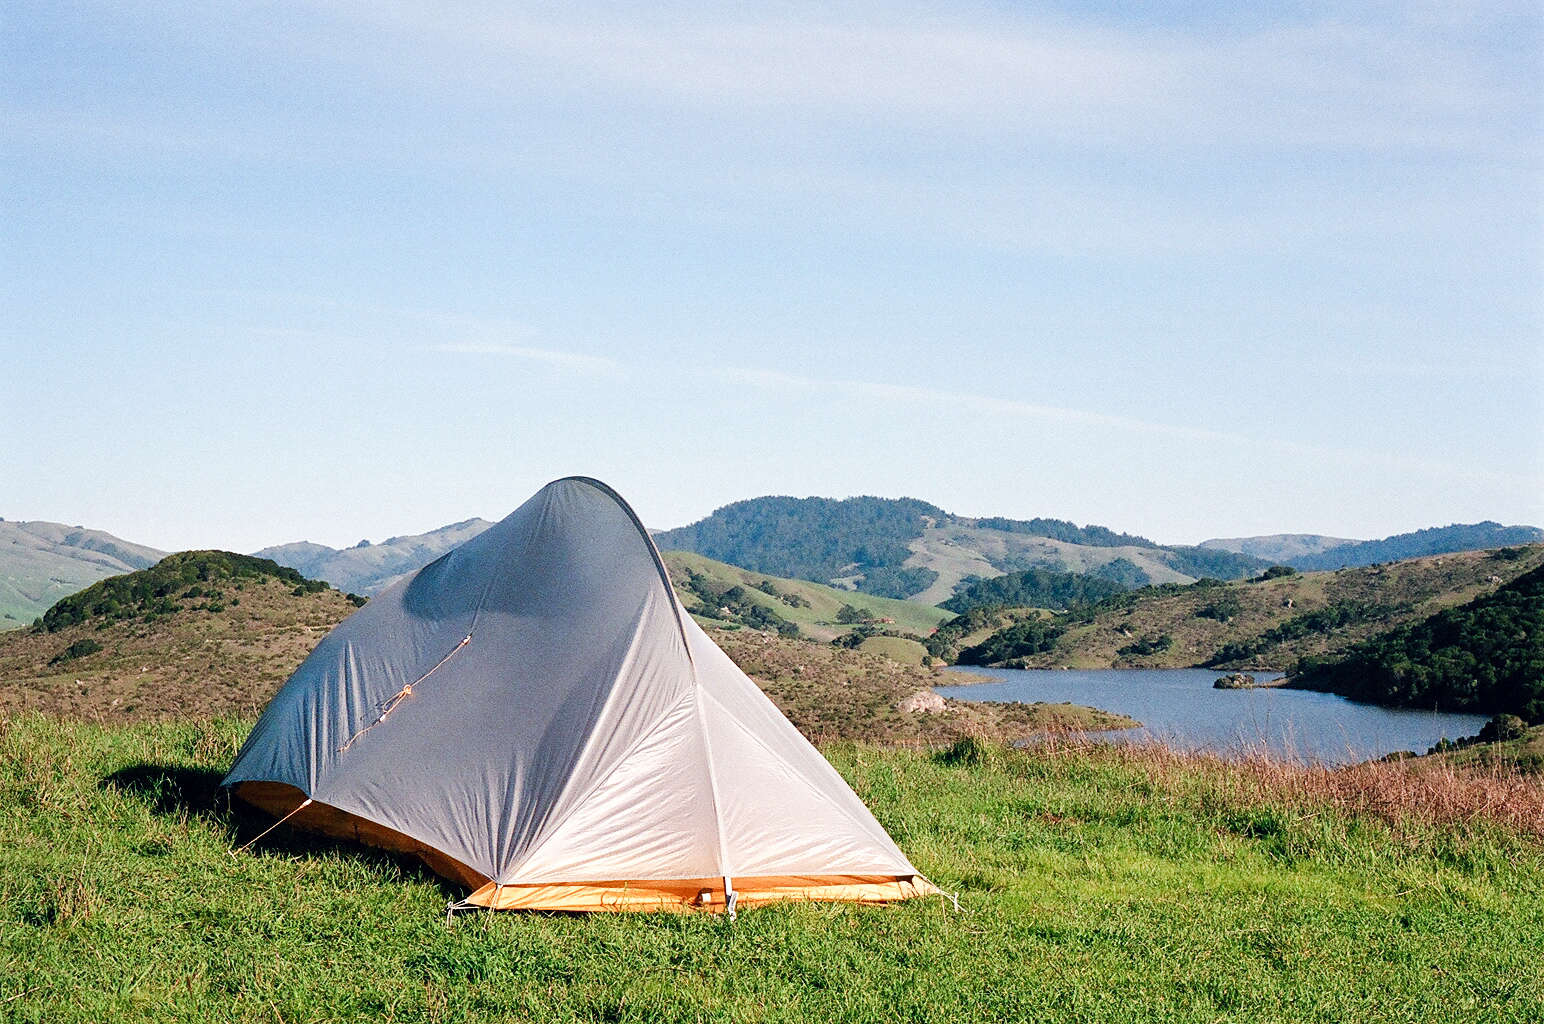 Camp black. Палатка для гор. Палатка у озера в горах. Мостовской кемпинг. Автомобиль палатка горы.